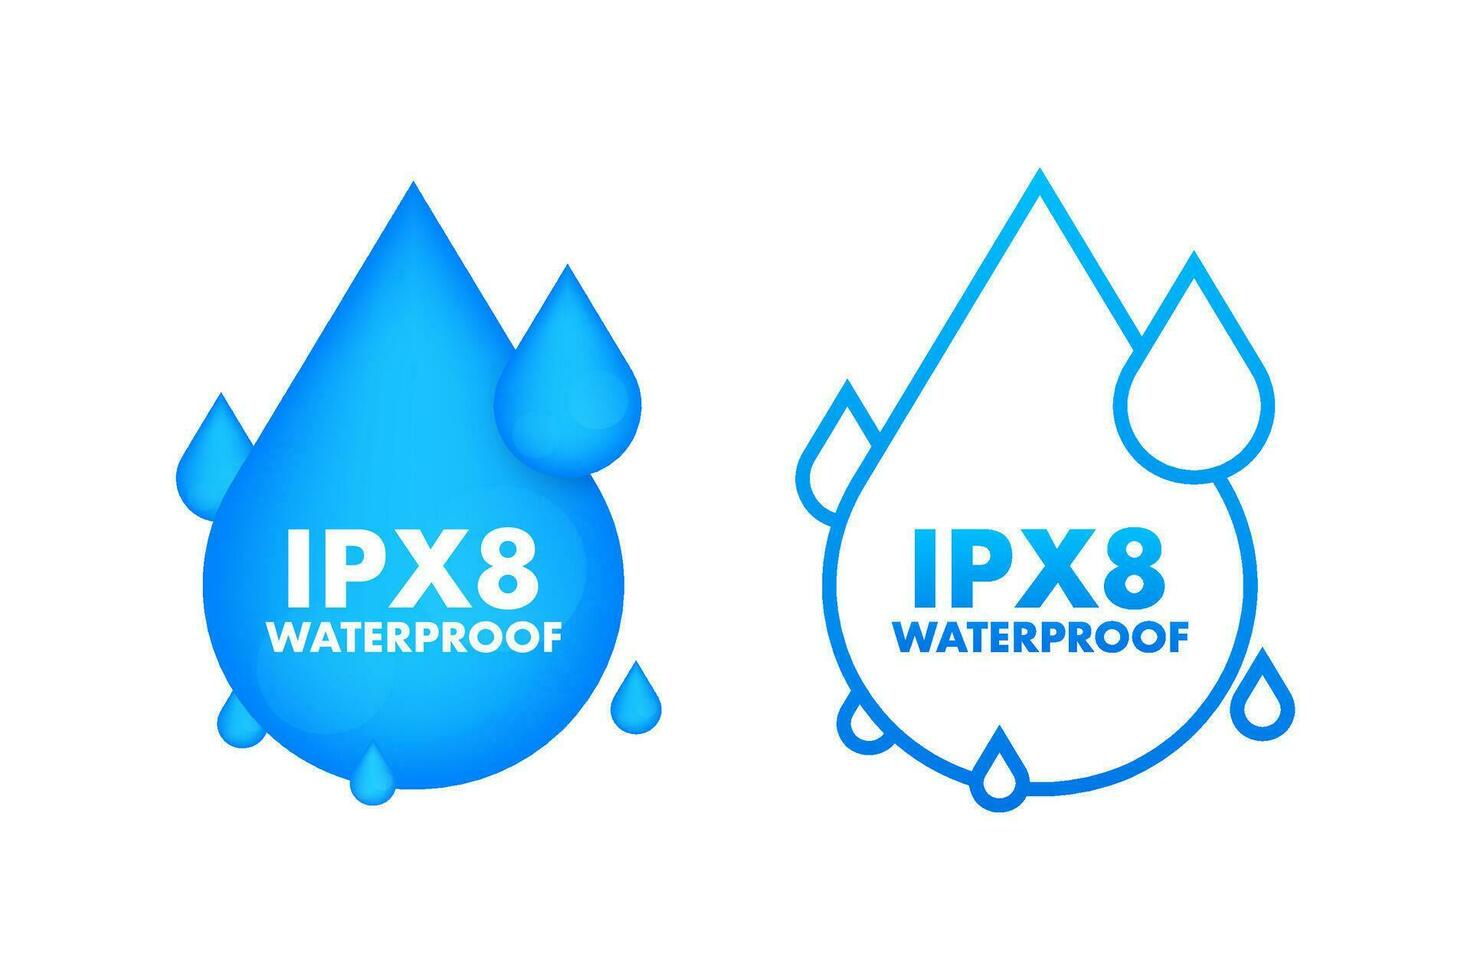 ipx8 wasserdicht, Wasser Widerstand Niveau Information unterzeichnen. vektor